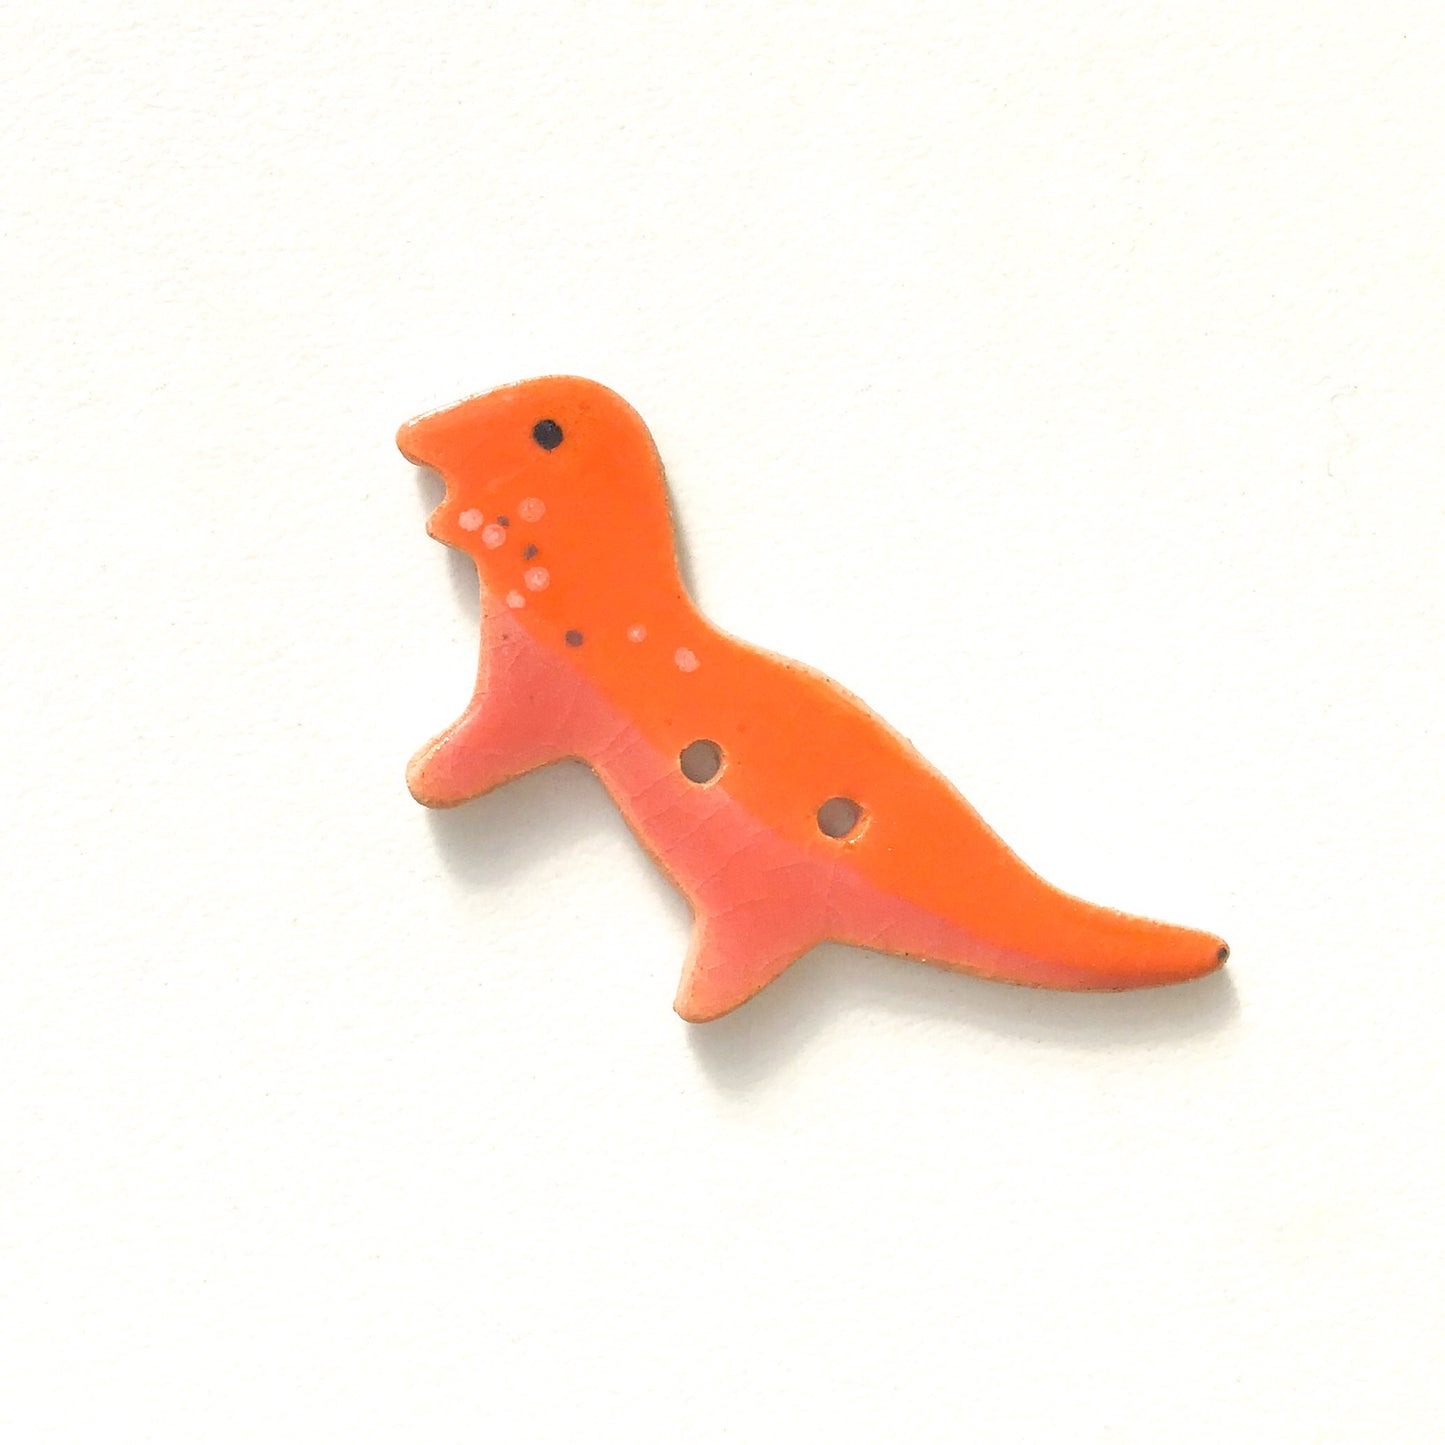 T-Rex Buttons - Ceramic Dinosaur Buttons - Children's Animal Buttons (ws-242)